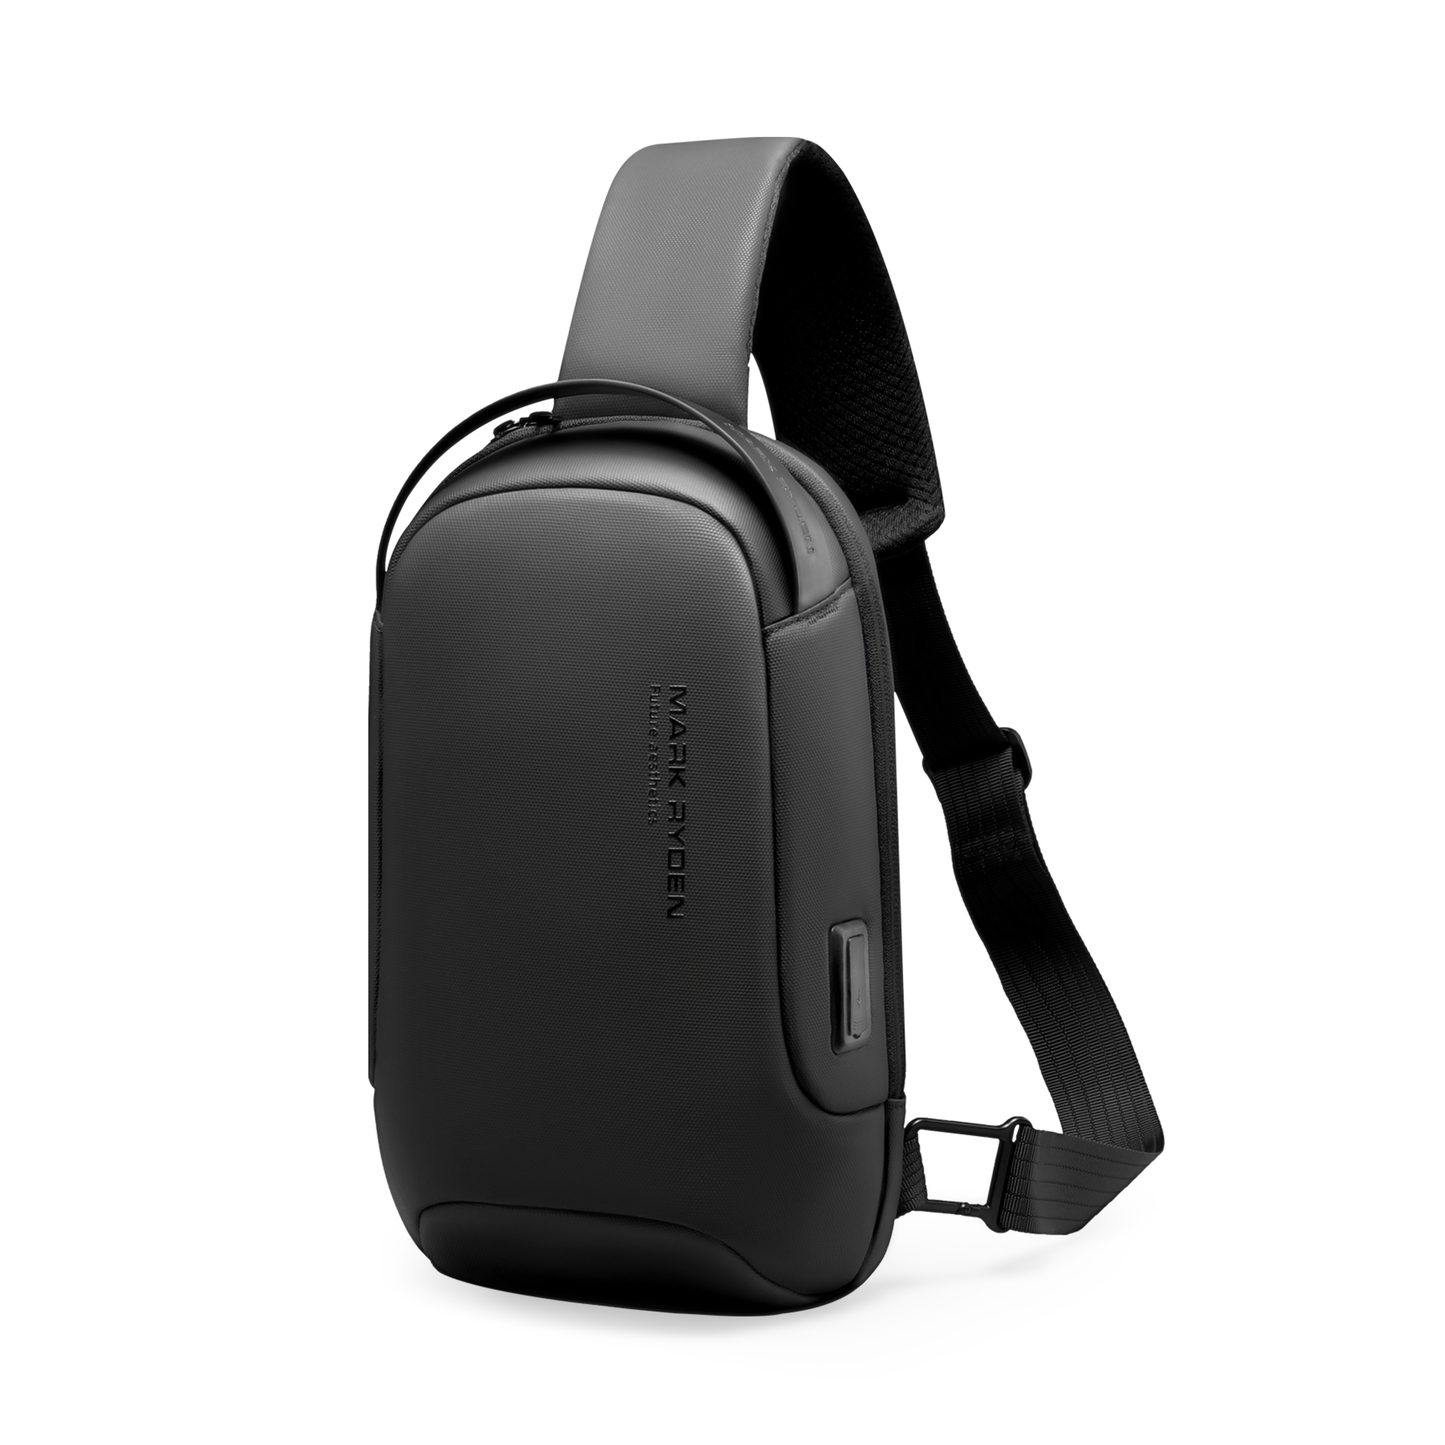 Torino: Multifunctional USB Port Adjustable Shoulder Strap Hidden Pockets Secure Sling Bag